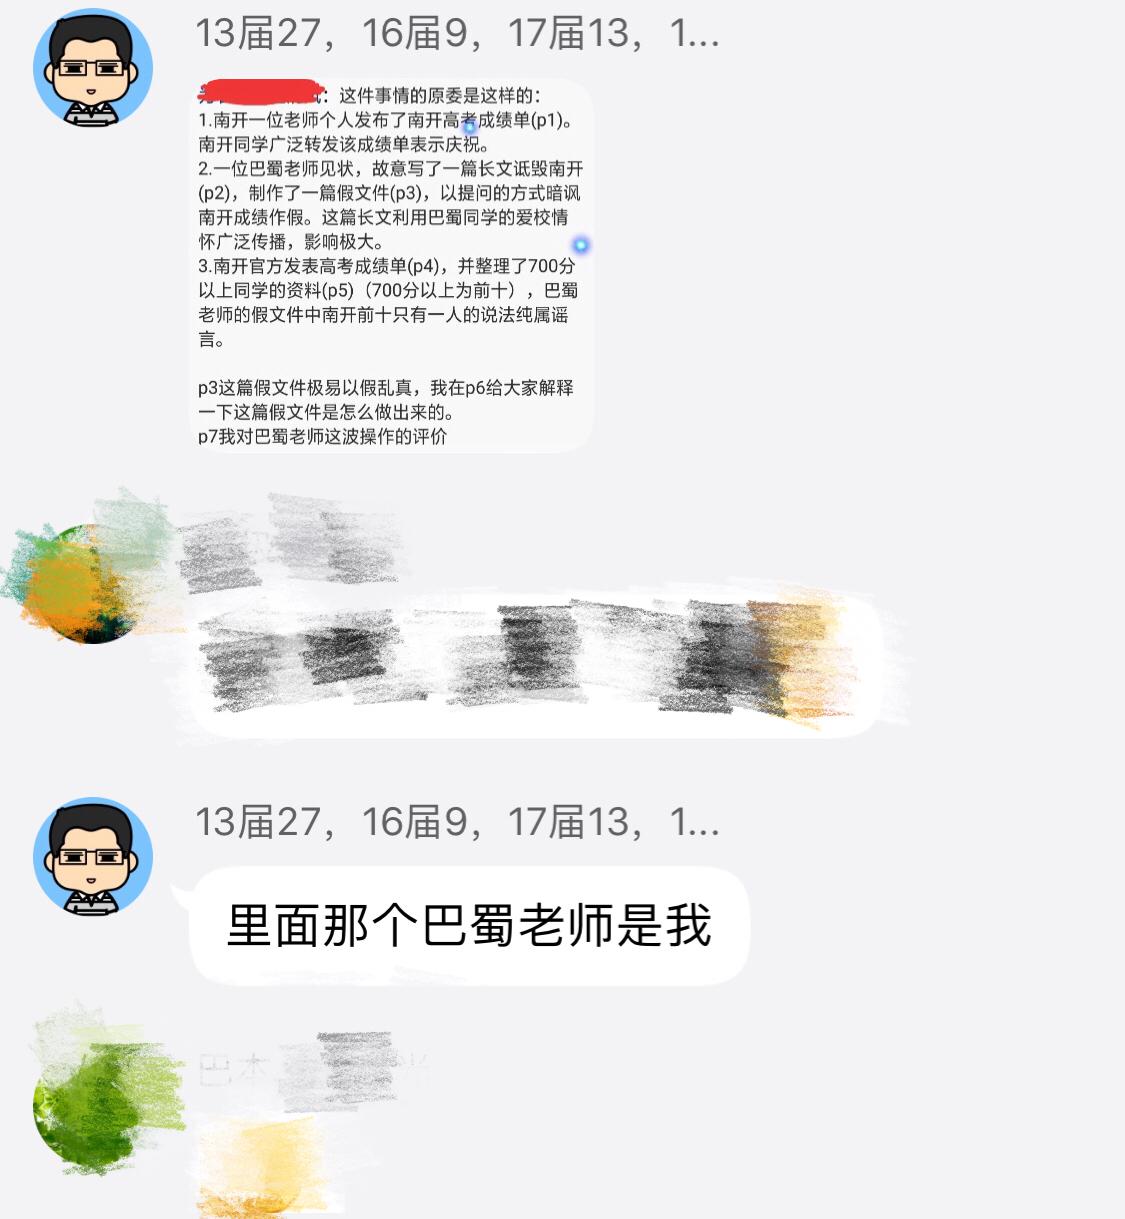 如何评价重庆巴蜀中学老师造谣诬陷重庆南开中